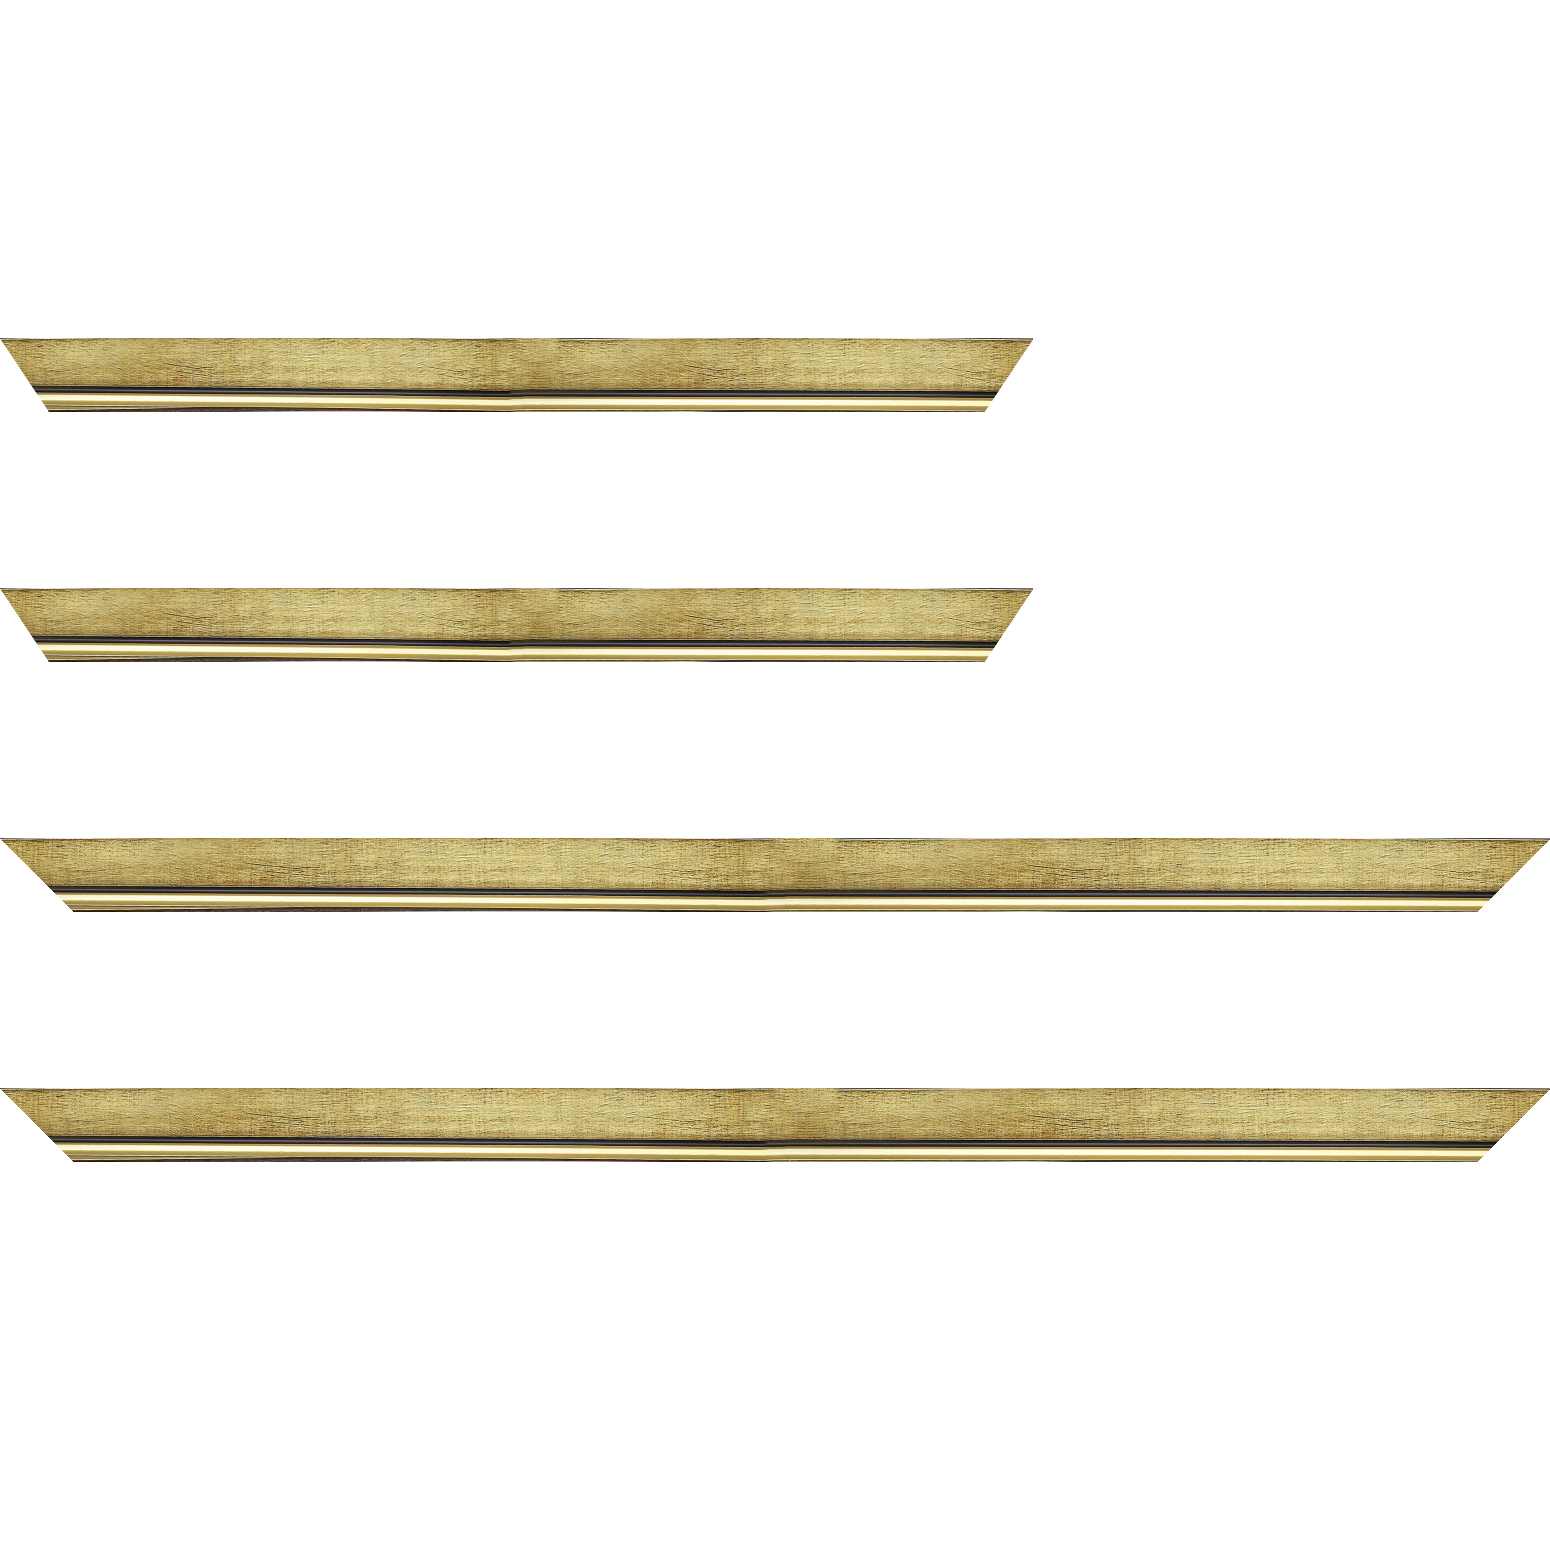 Baguette bois profil plat largeur 2.5cm couleur or filet or surligné noir - 34x40